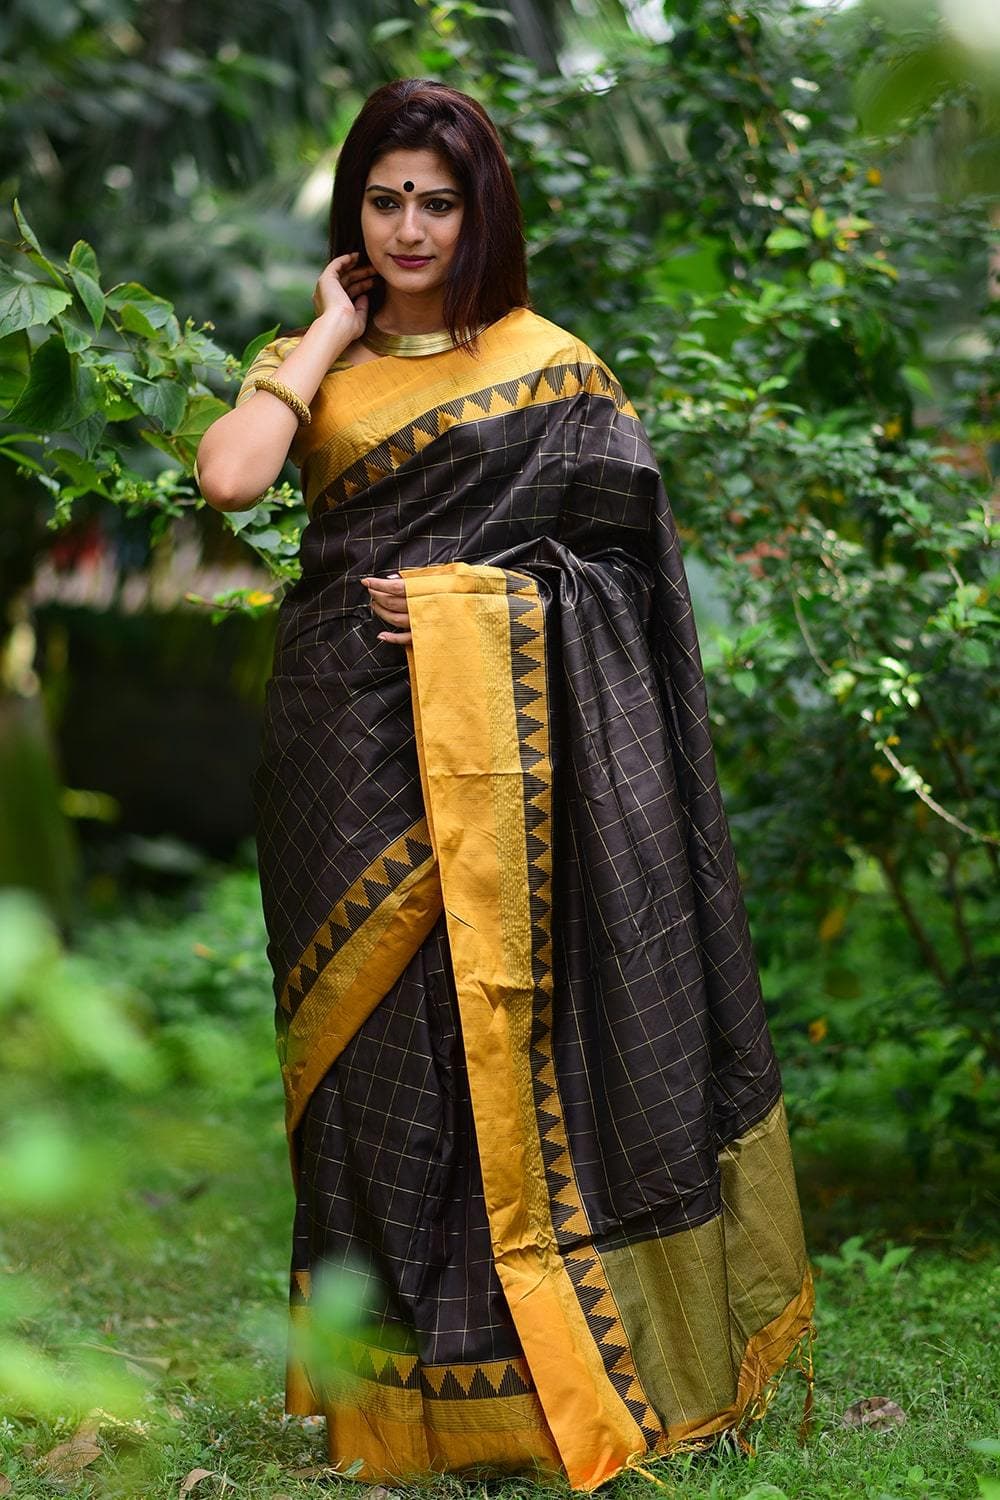 Buy the amazing black banarasi raw silk saree online on Karagiri